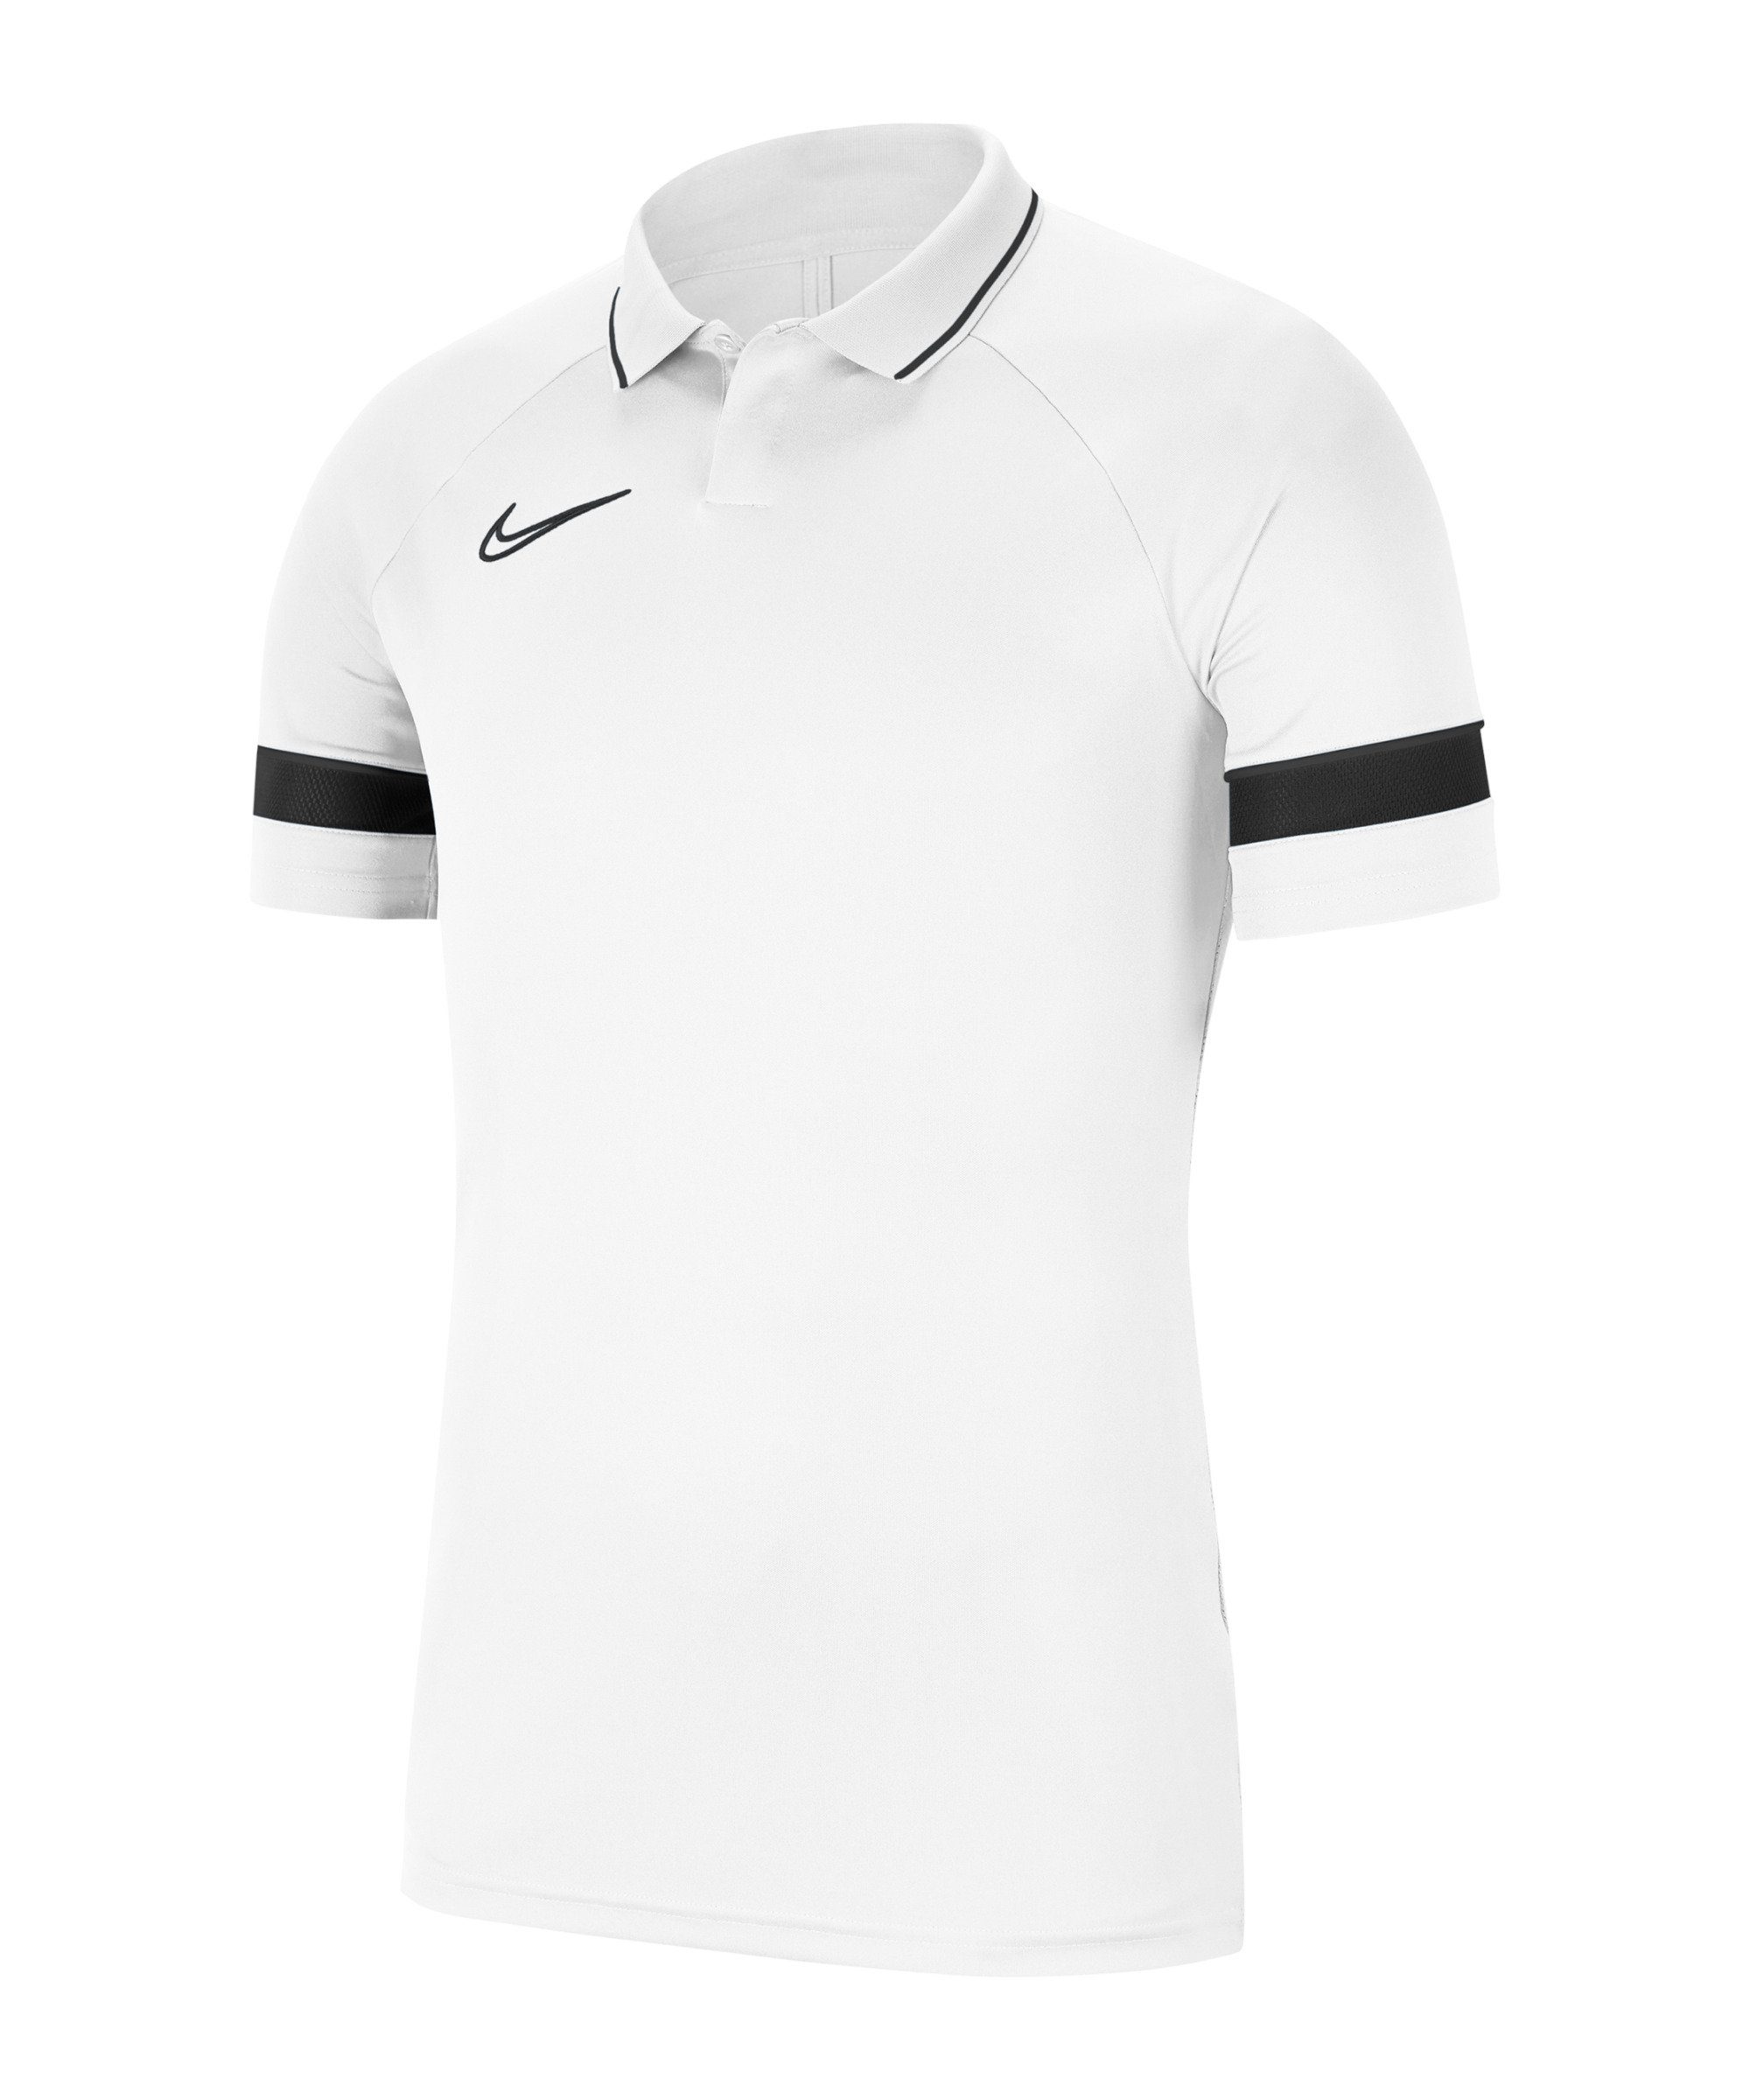 Poloshirt weissschwarz Academy T-Shirt default Nike 21